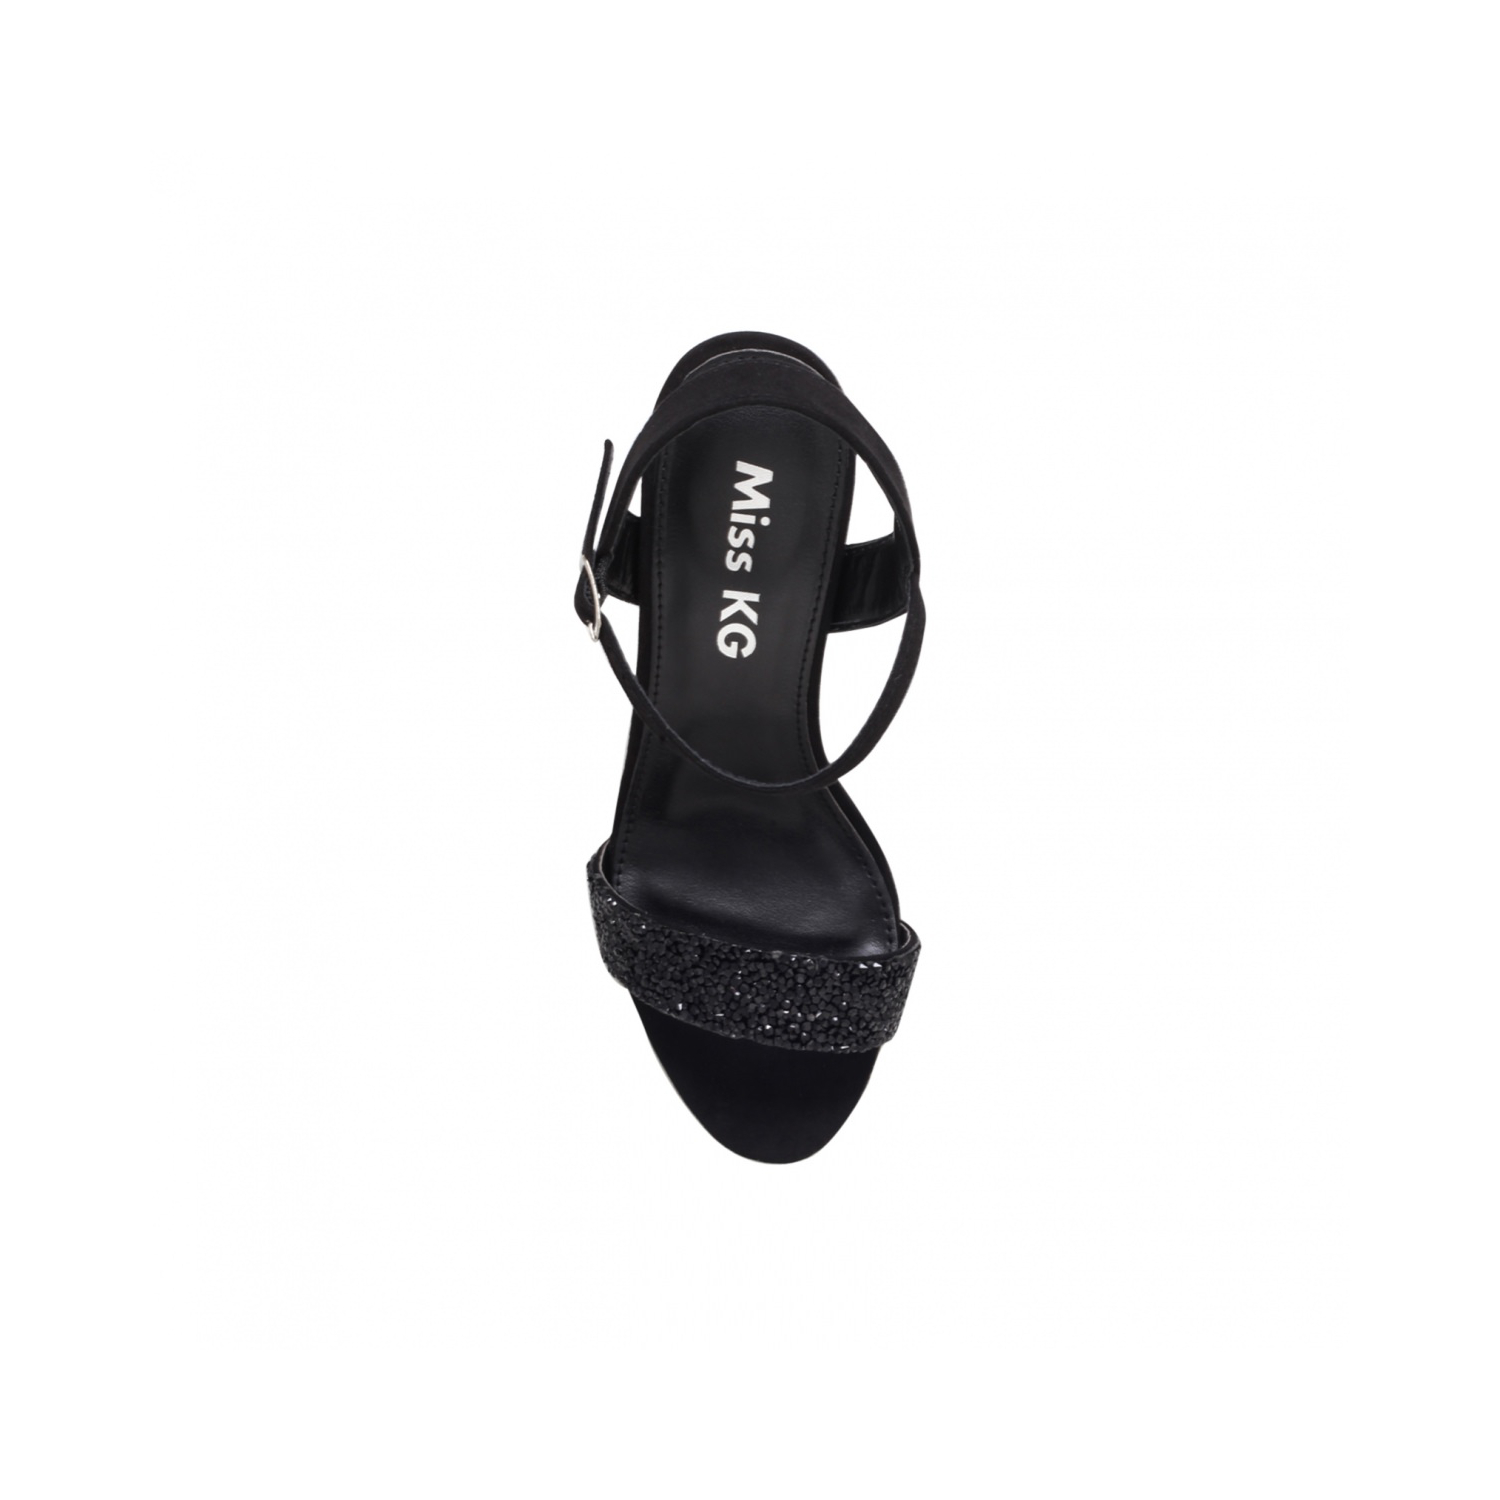 Ivy 2 Heeled Sandals Black